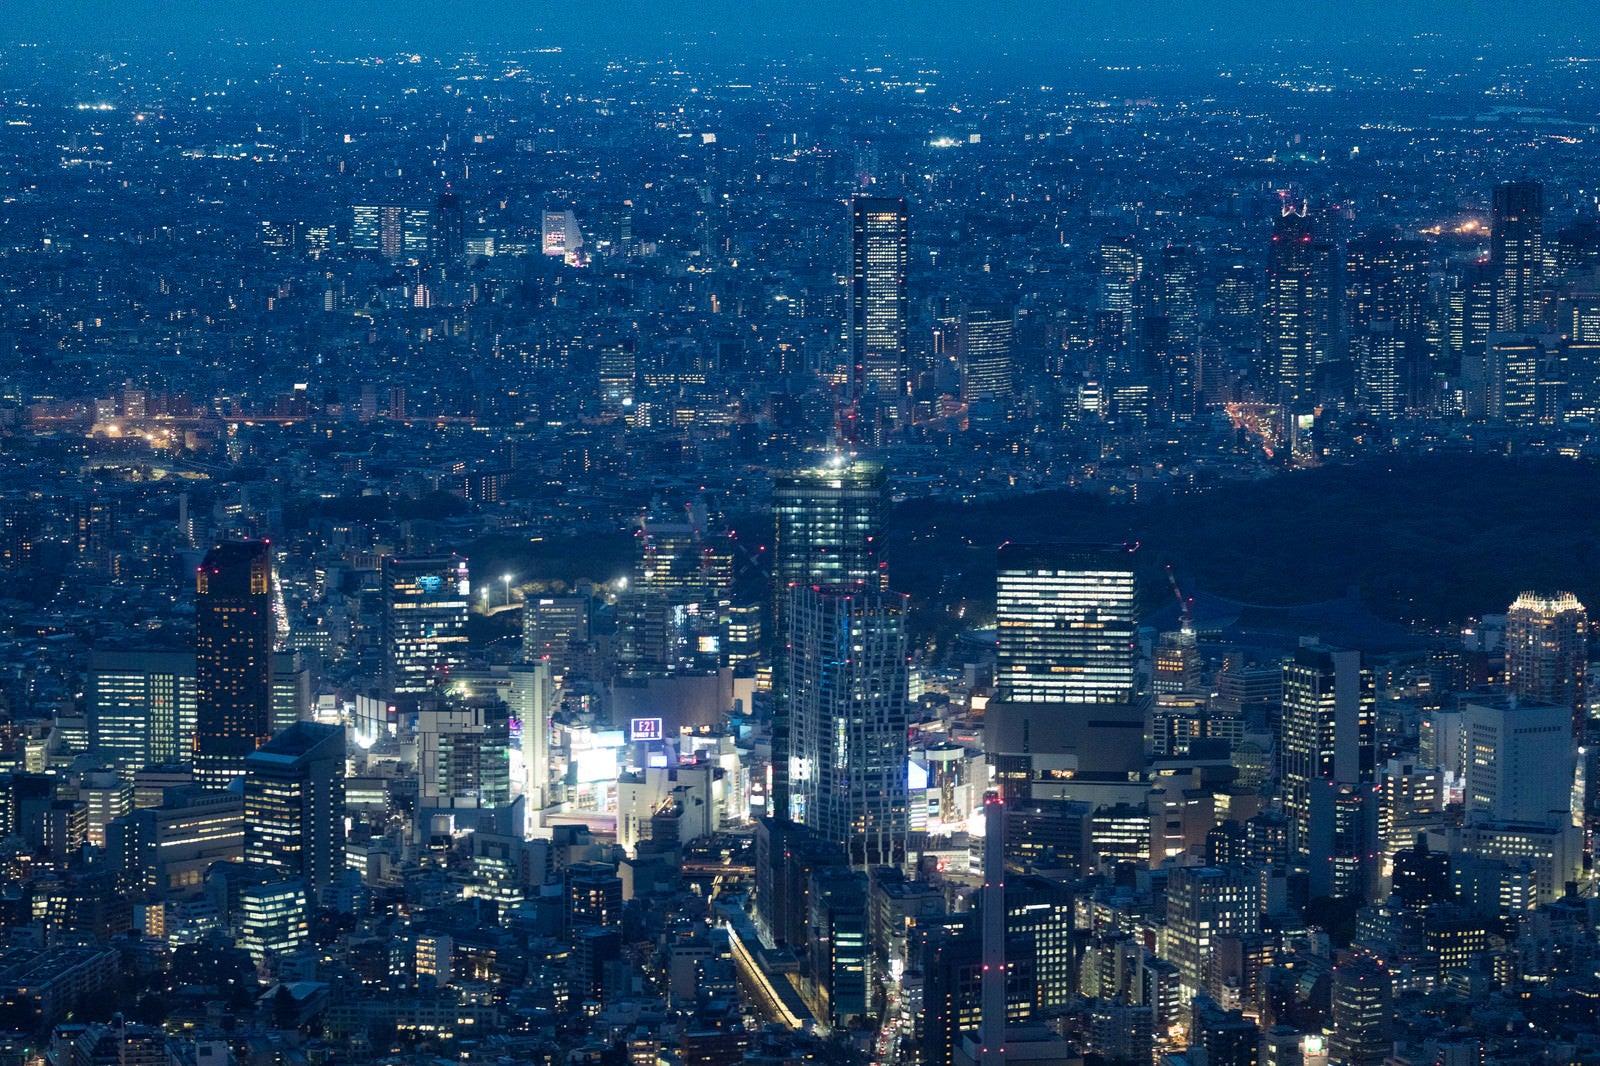 「渋谷付近のビル群と空撮夜景」の写真